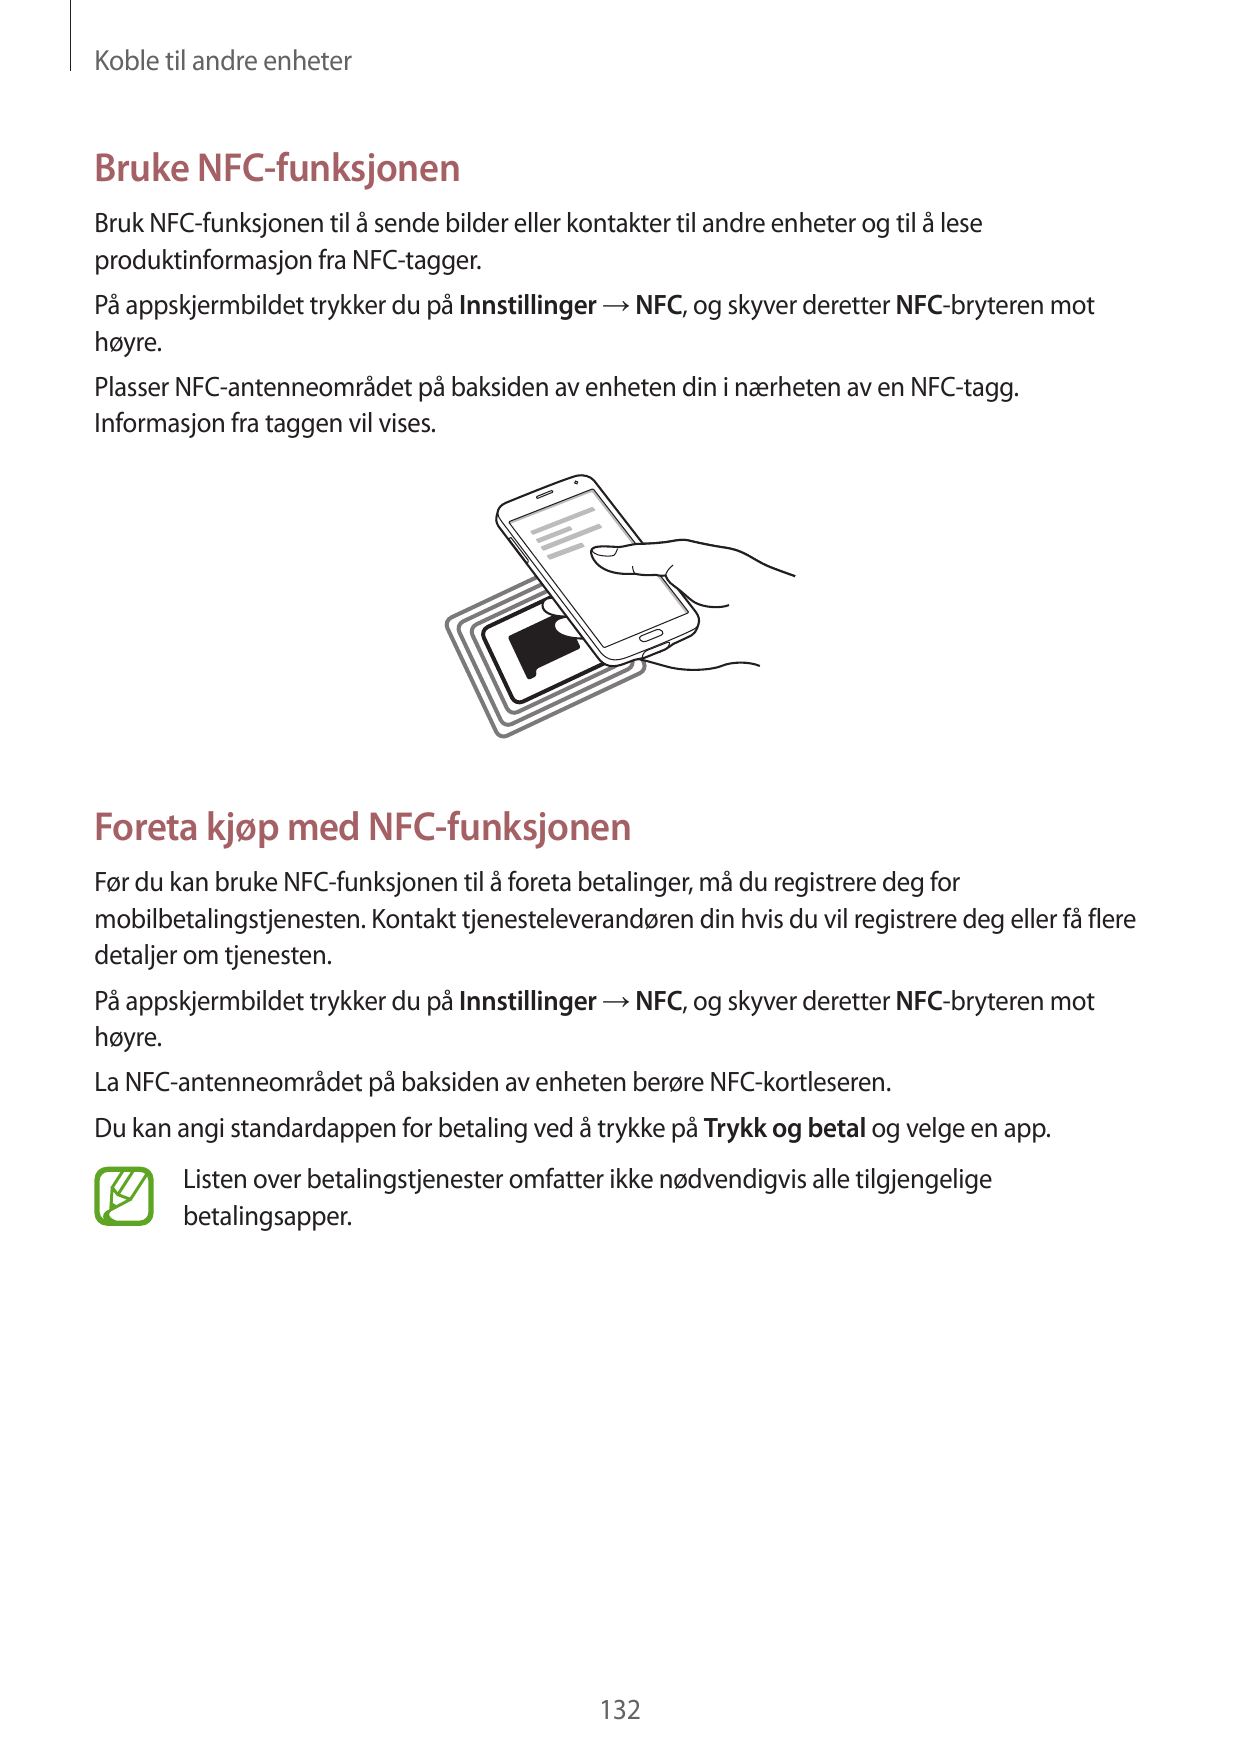 Koble til andre enheterBruke NFC-funksjonenBruk NFC-funksjonen til å sende bilder eller kontakter til andre enheter og til å les